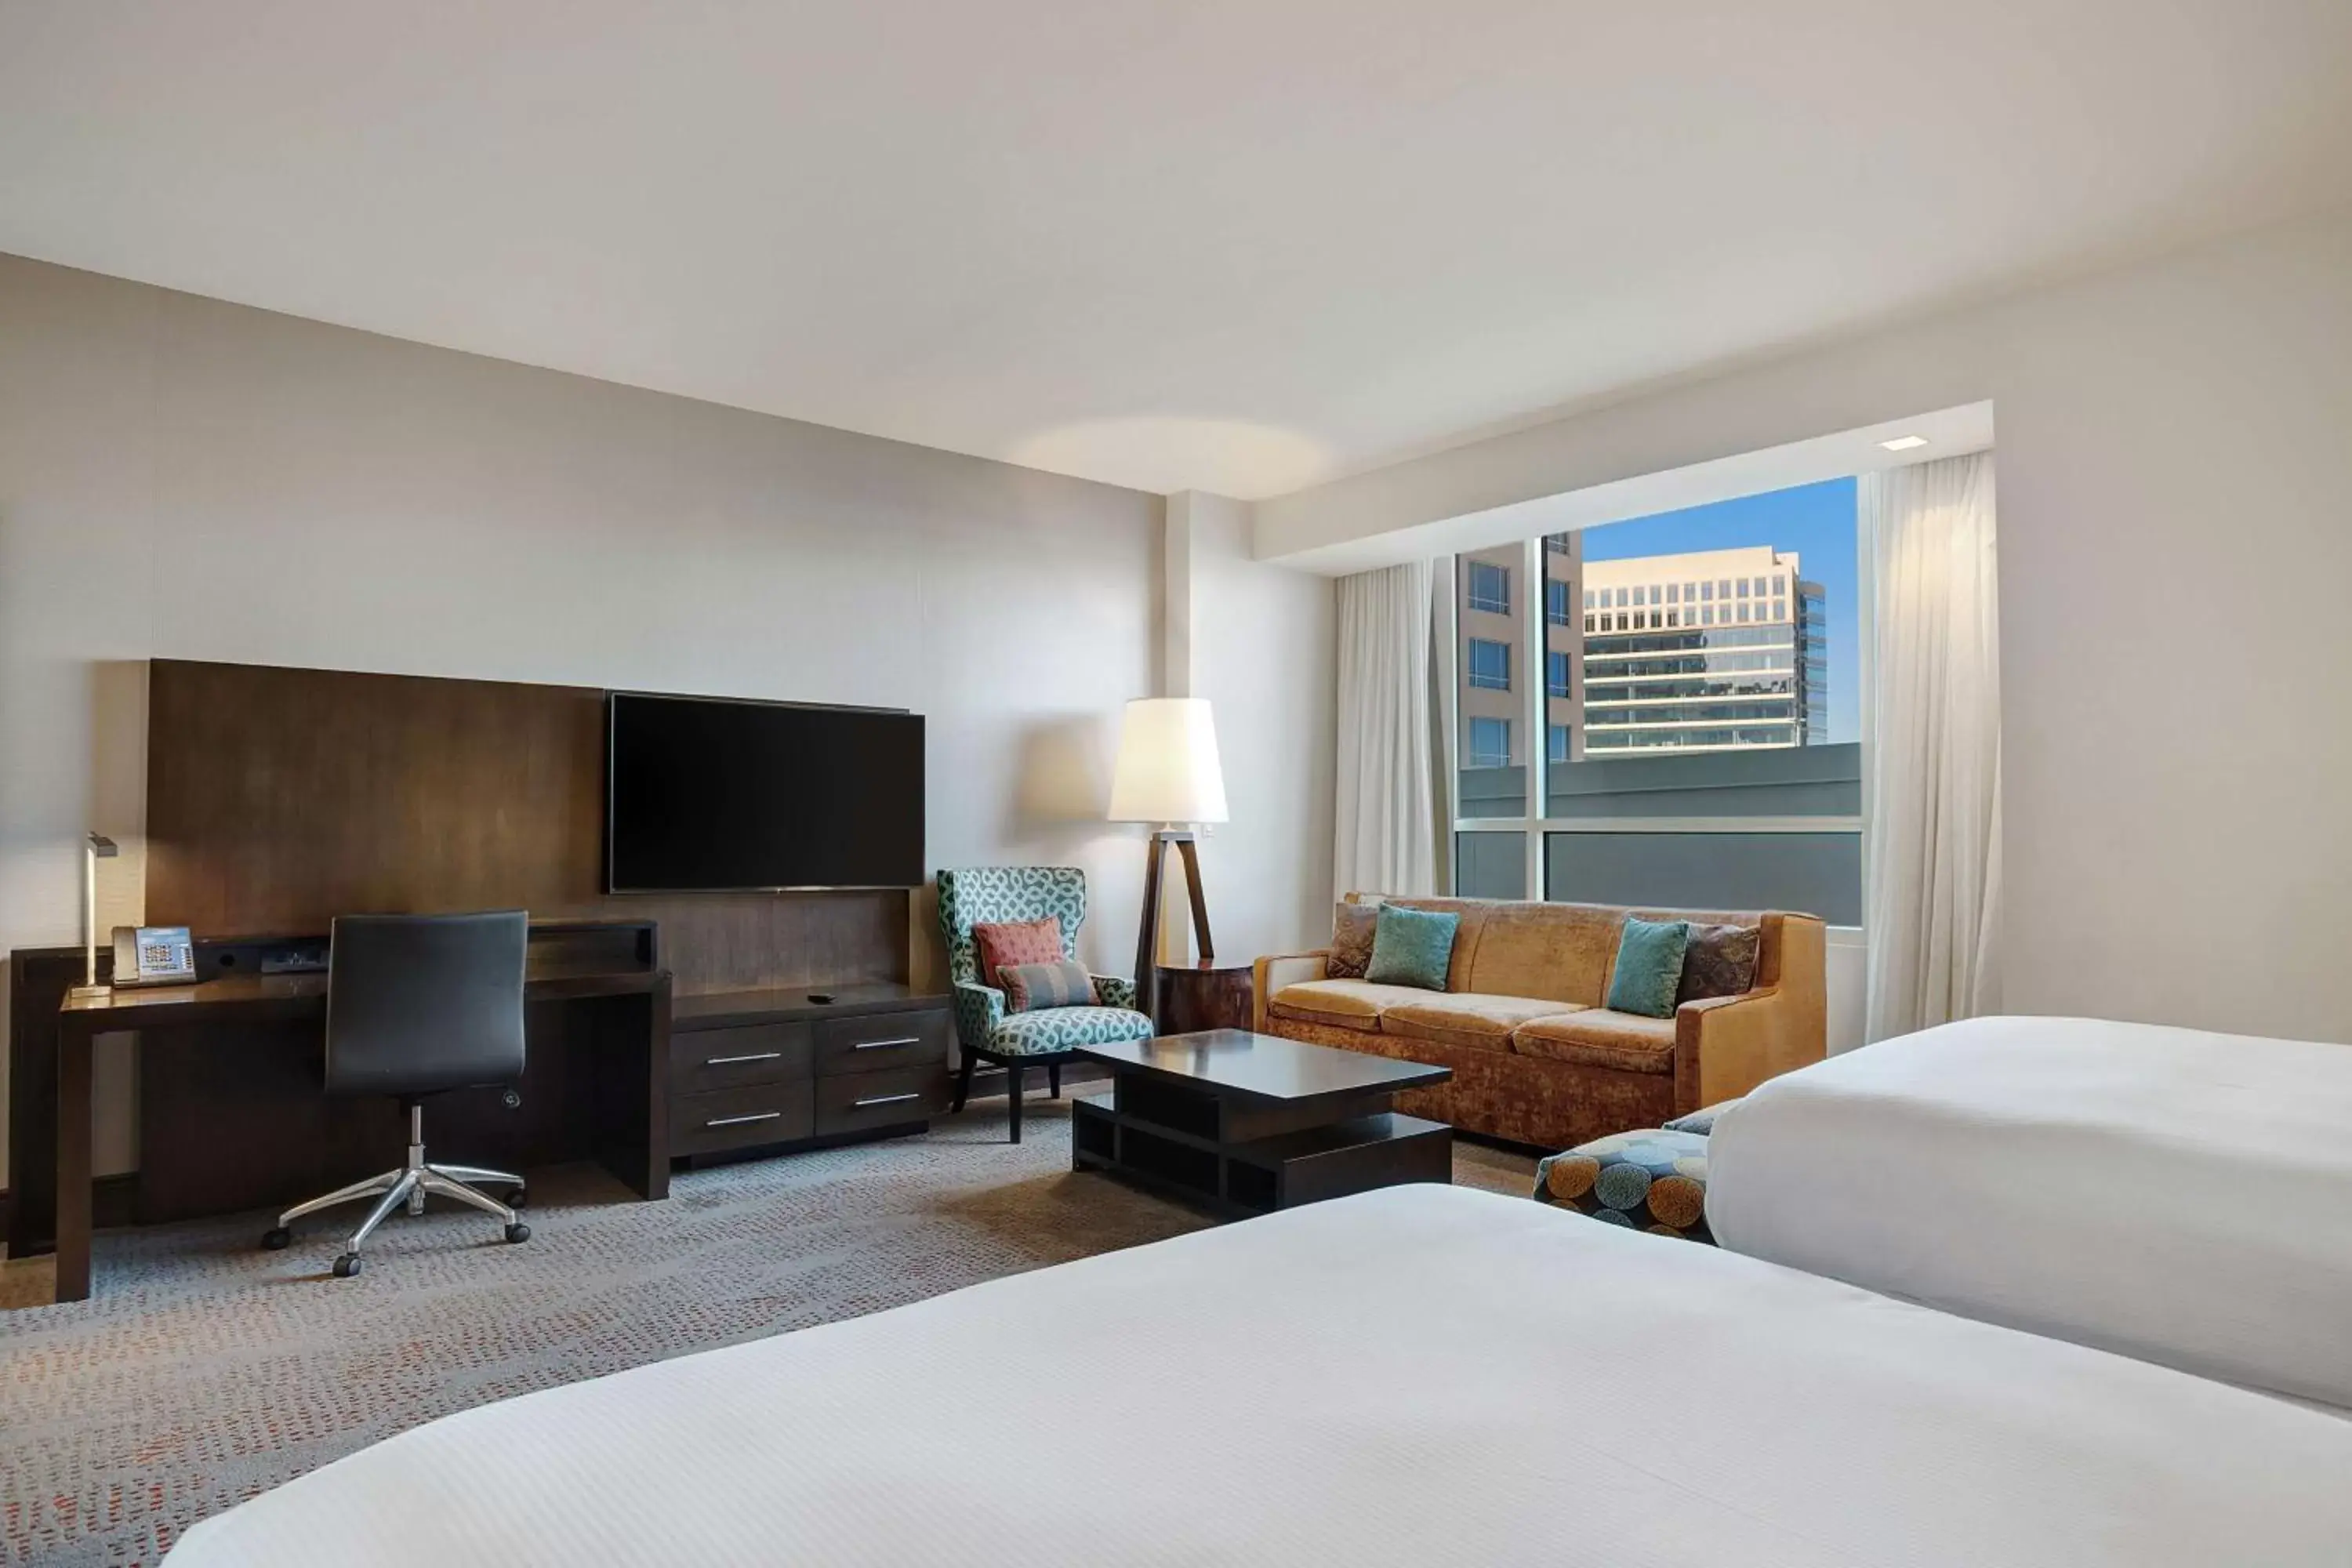 Bedroom, TV/Entertainment Center in Hilton Dallas/Plano Granite Park